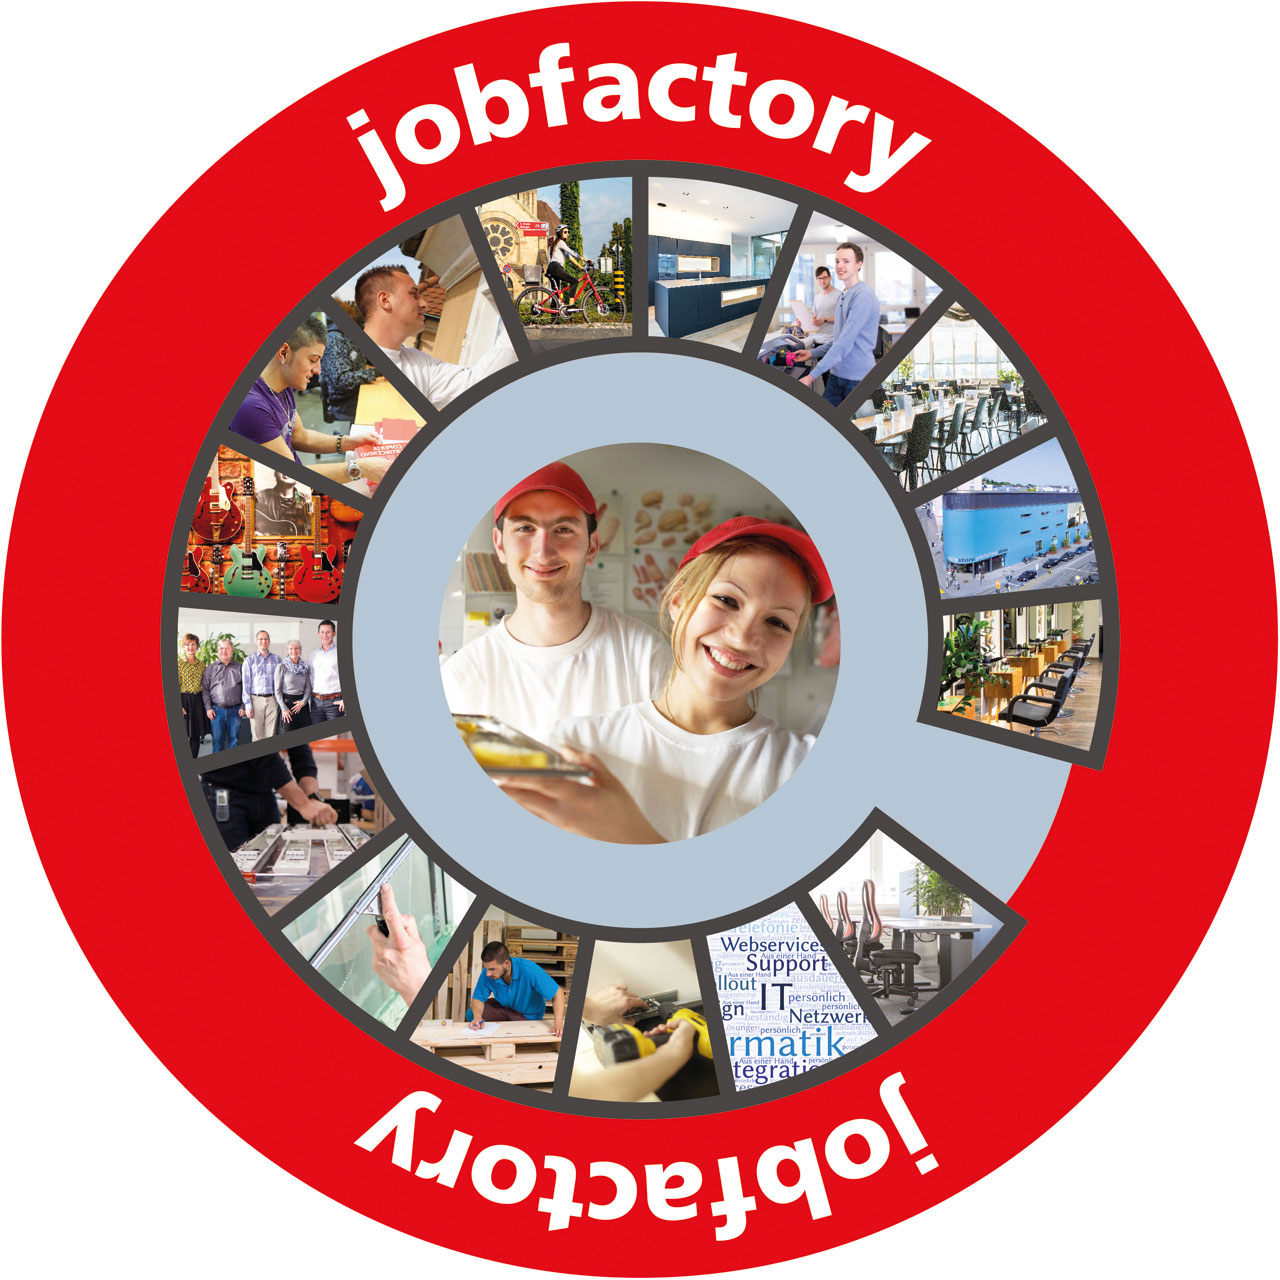 Wirtschafsmodell "Jobfactory"